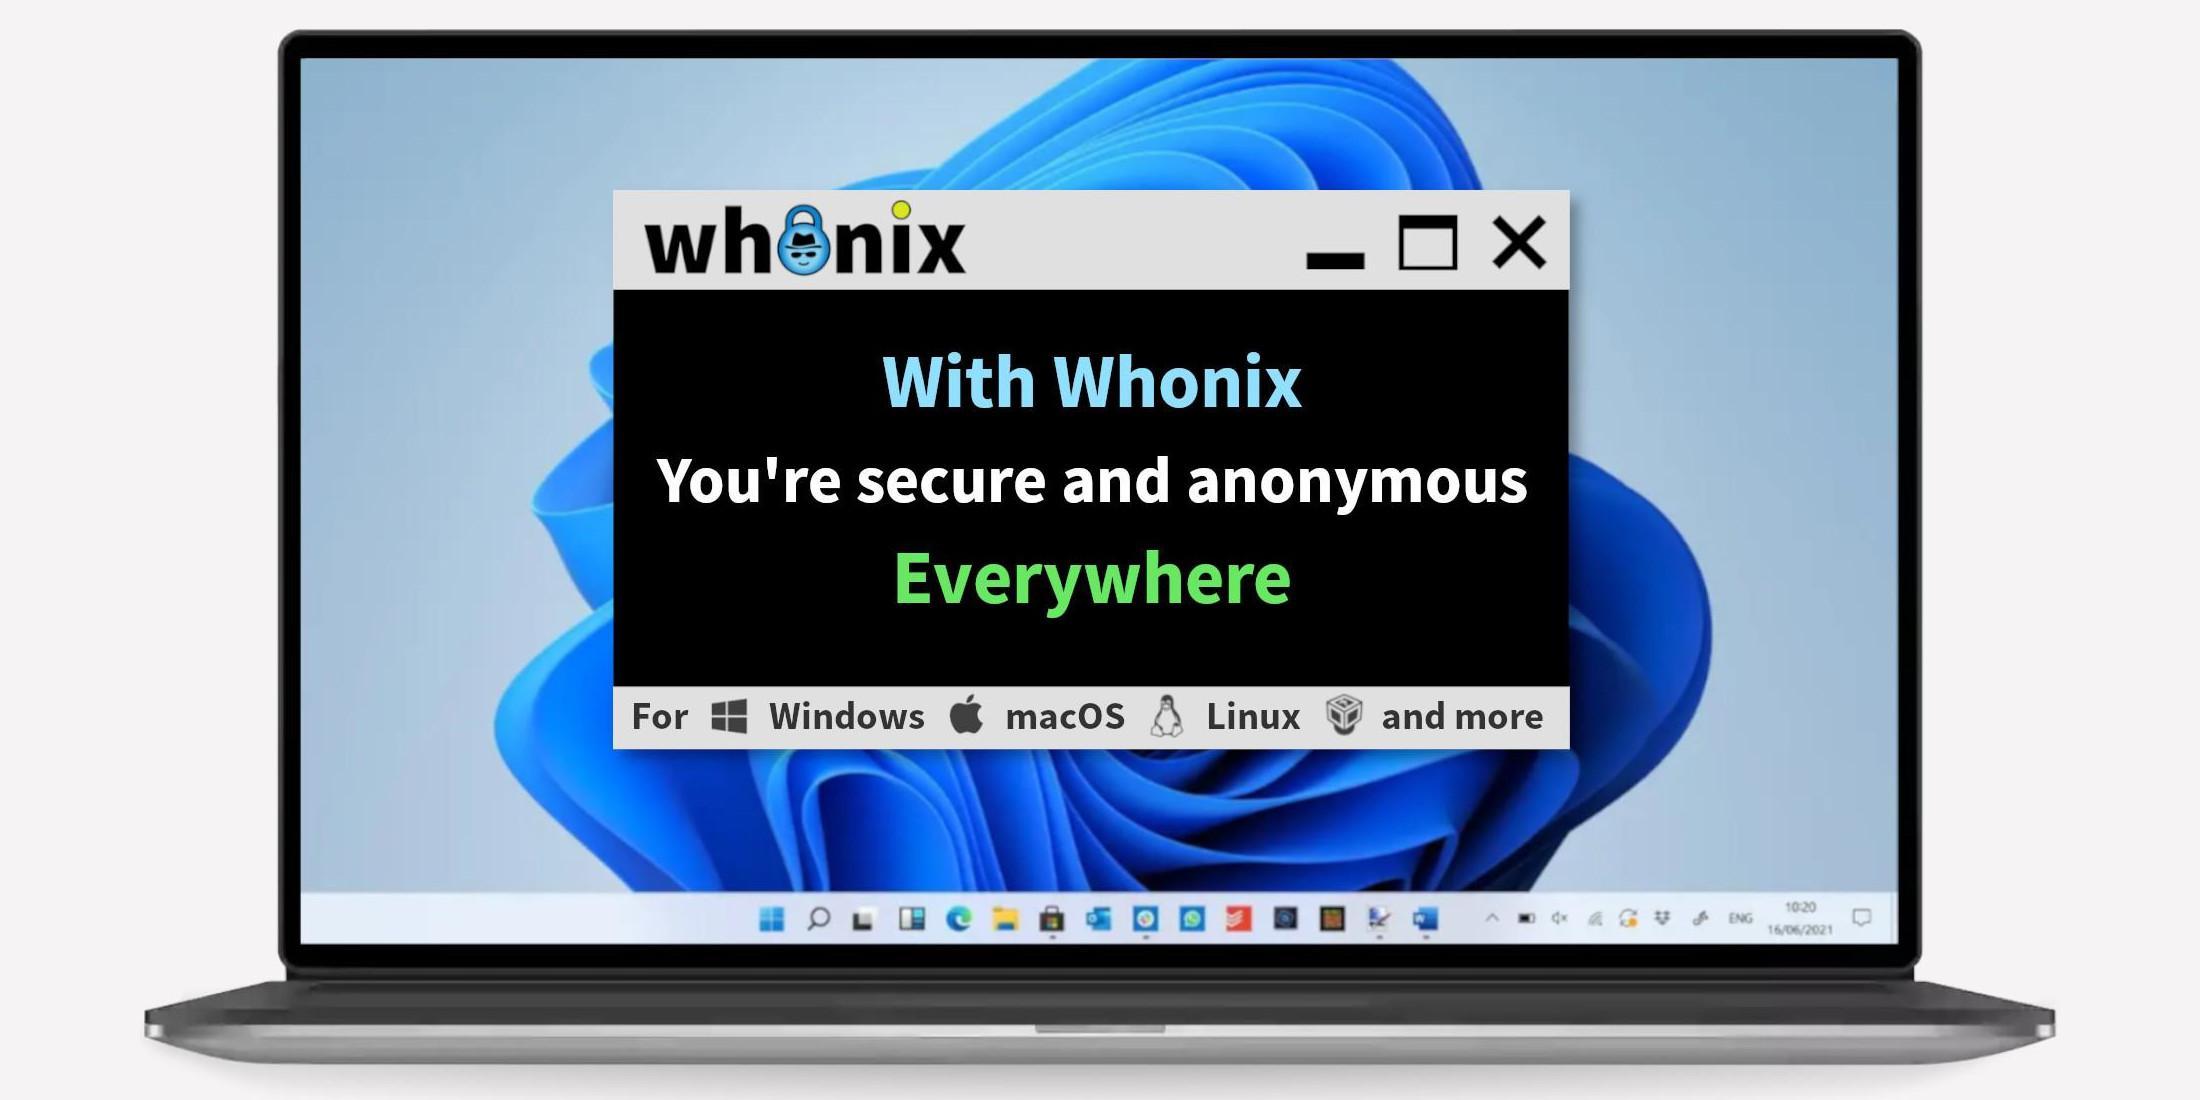 Whonix - Superior Internet Privacy